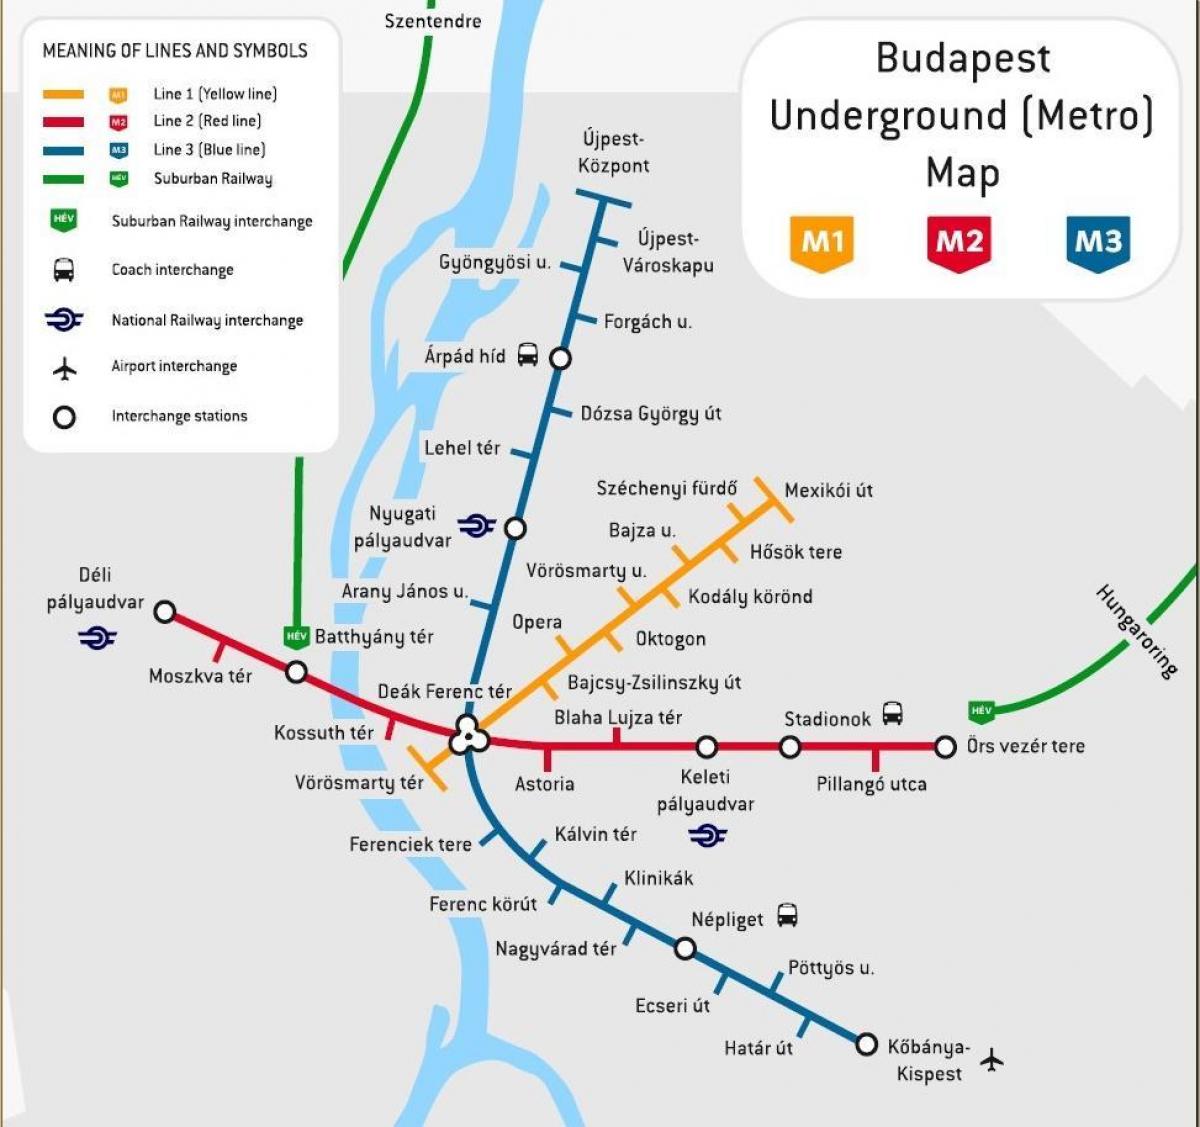 трамвай 2 будапешт газрын зураг